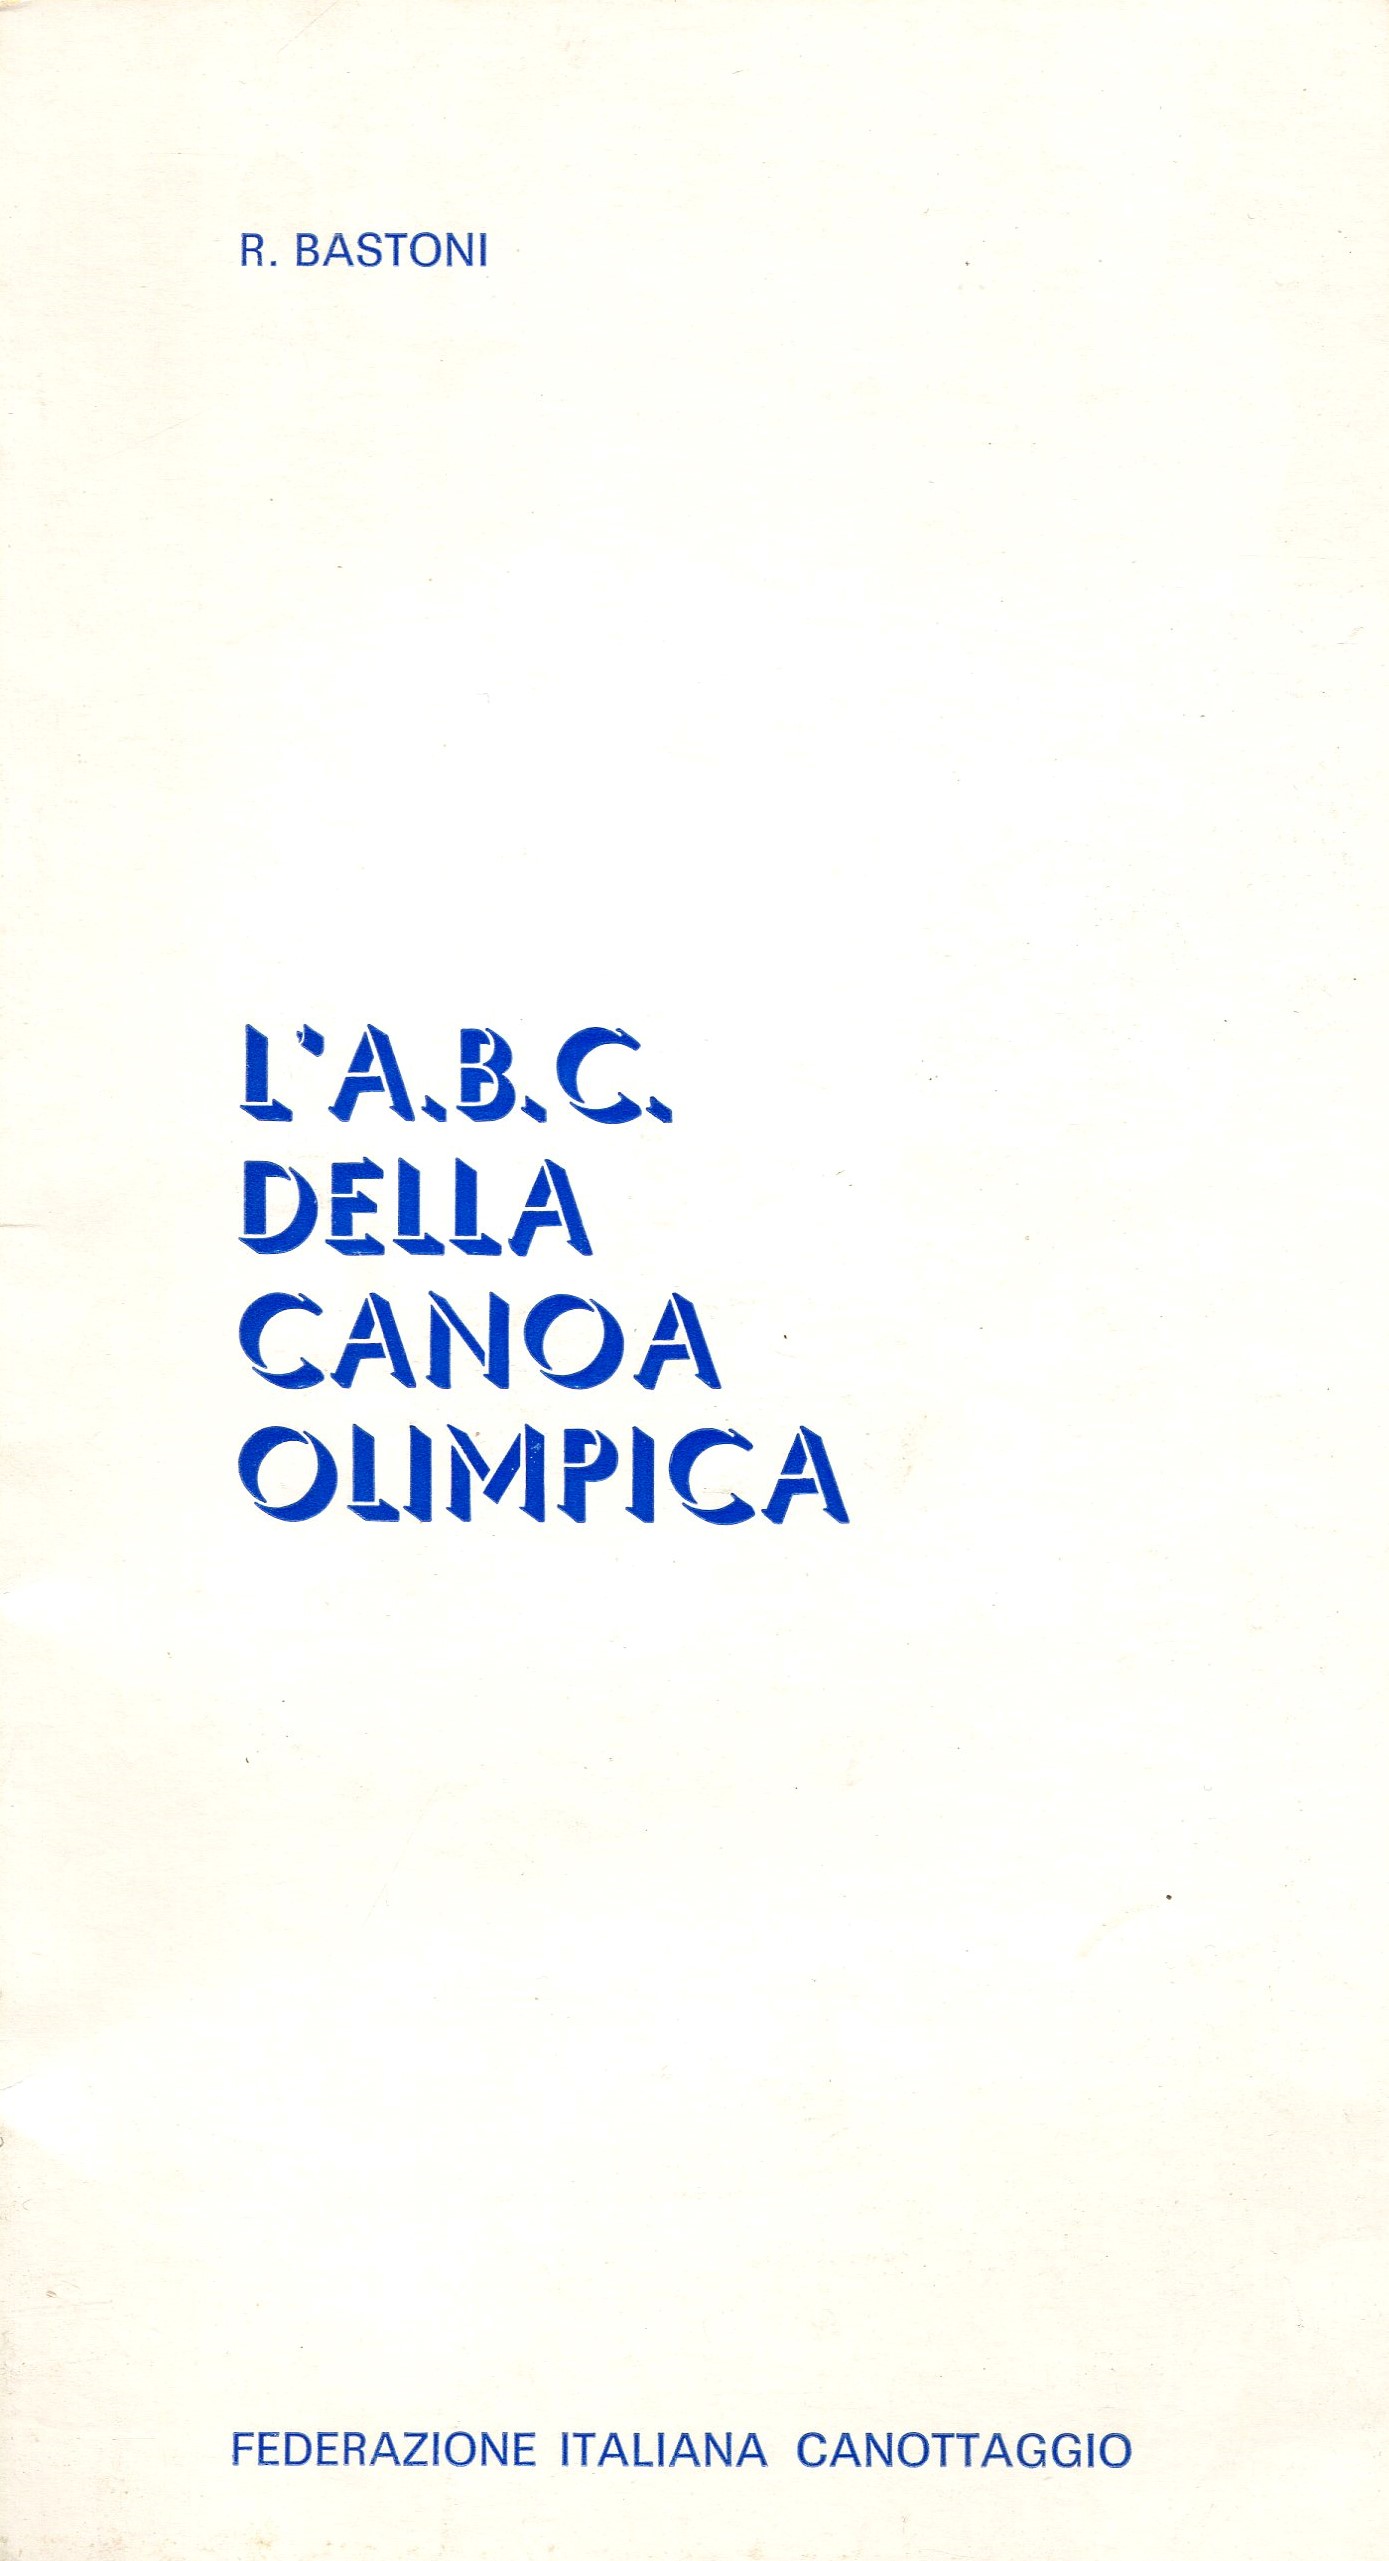 LABC della canoa olimpica Bastoni R. 1970